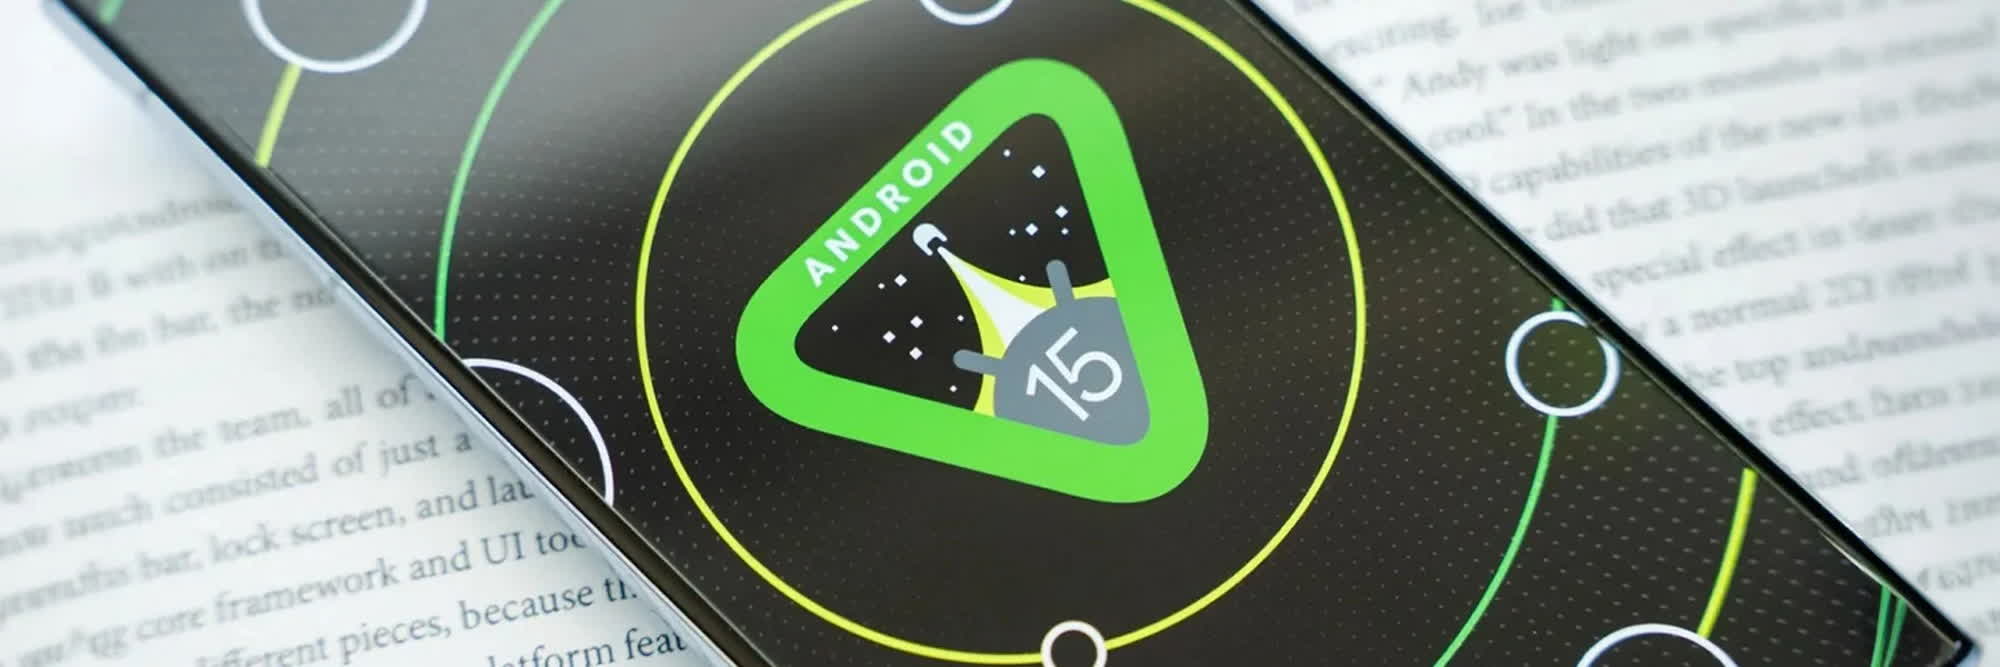 Android 15 podría tener un modo de escritorio mejorado para desarrolladores y posiblemente para el público